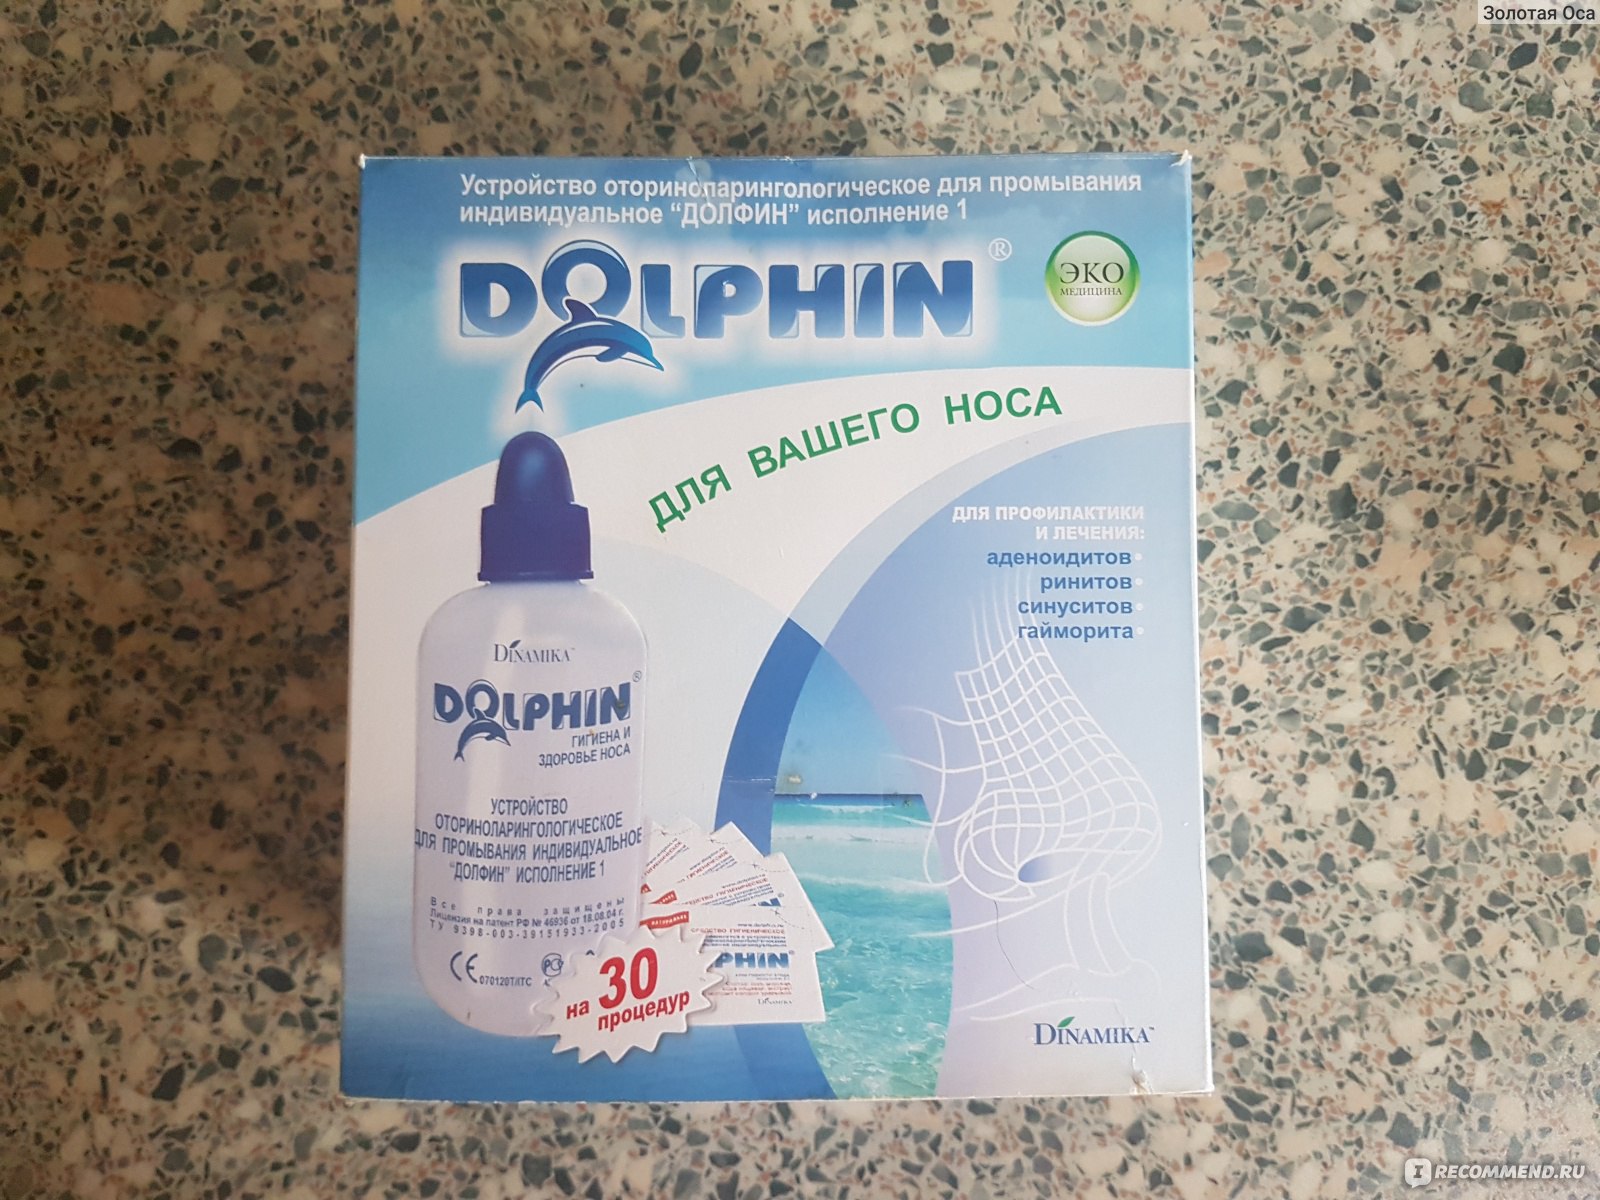 Долфин для промывания носа отзывы взрослых. Комплекс Долфин для промывания носа. Аппарат Долфин для промывания носа. Дельфинчик для промывания носа. Раствор для промывания носа Долфин.